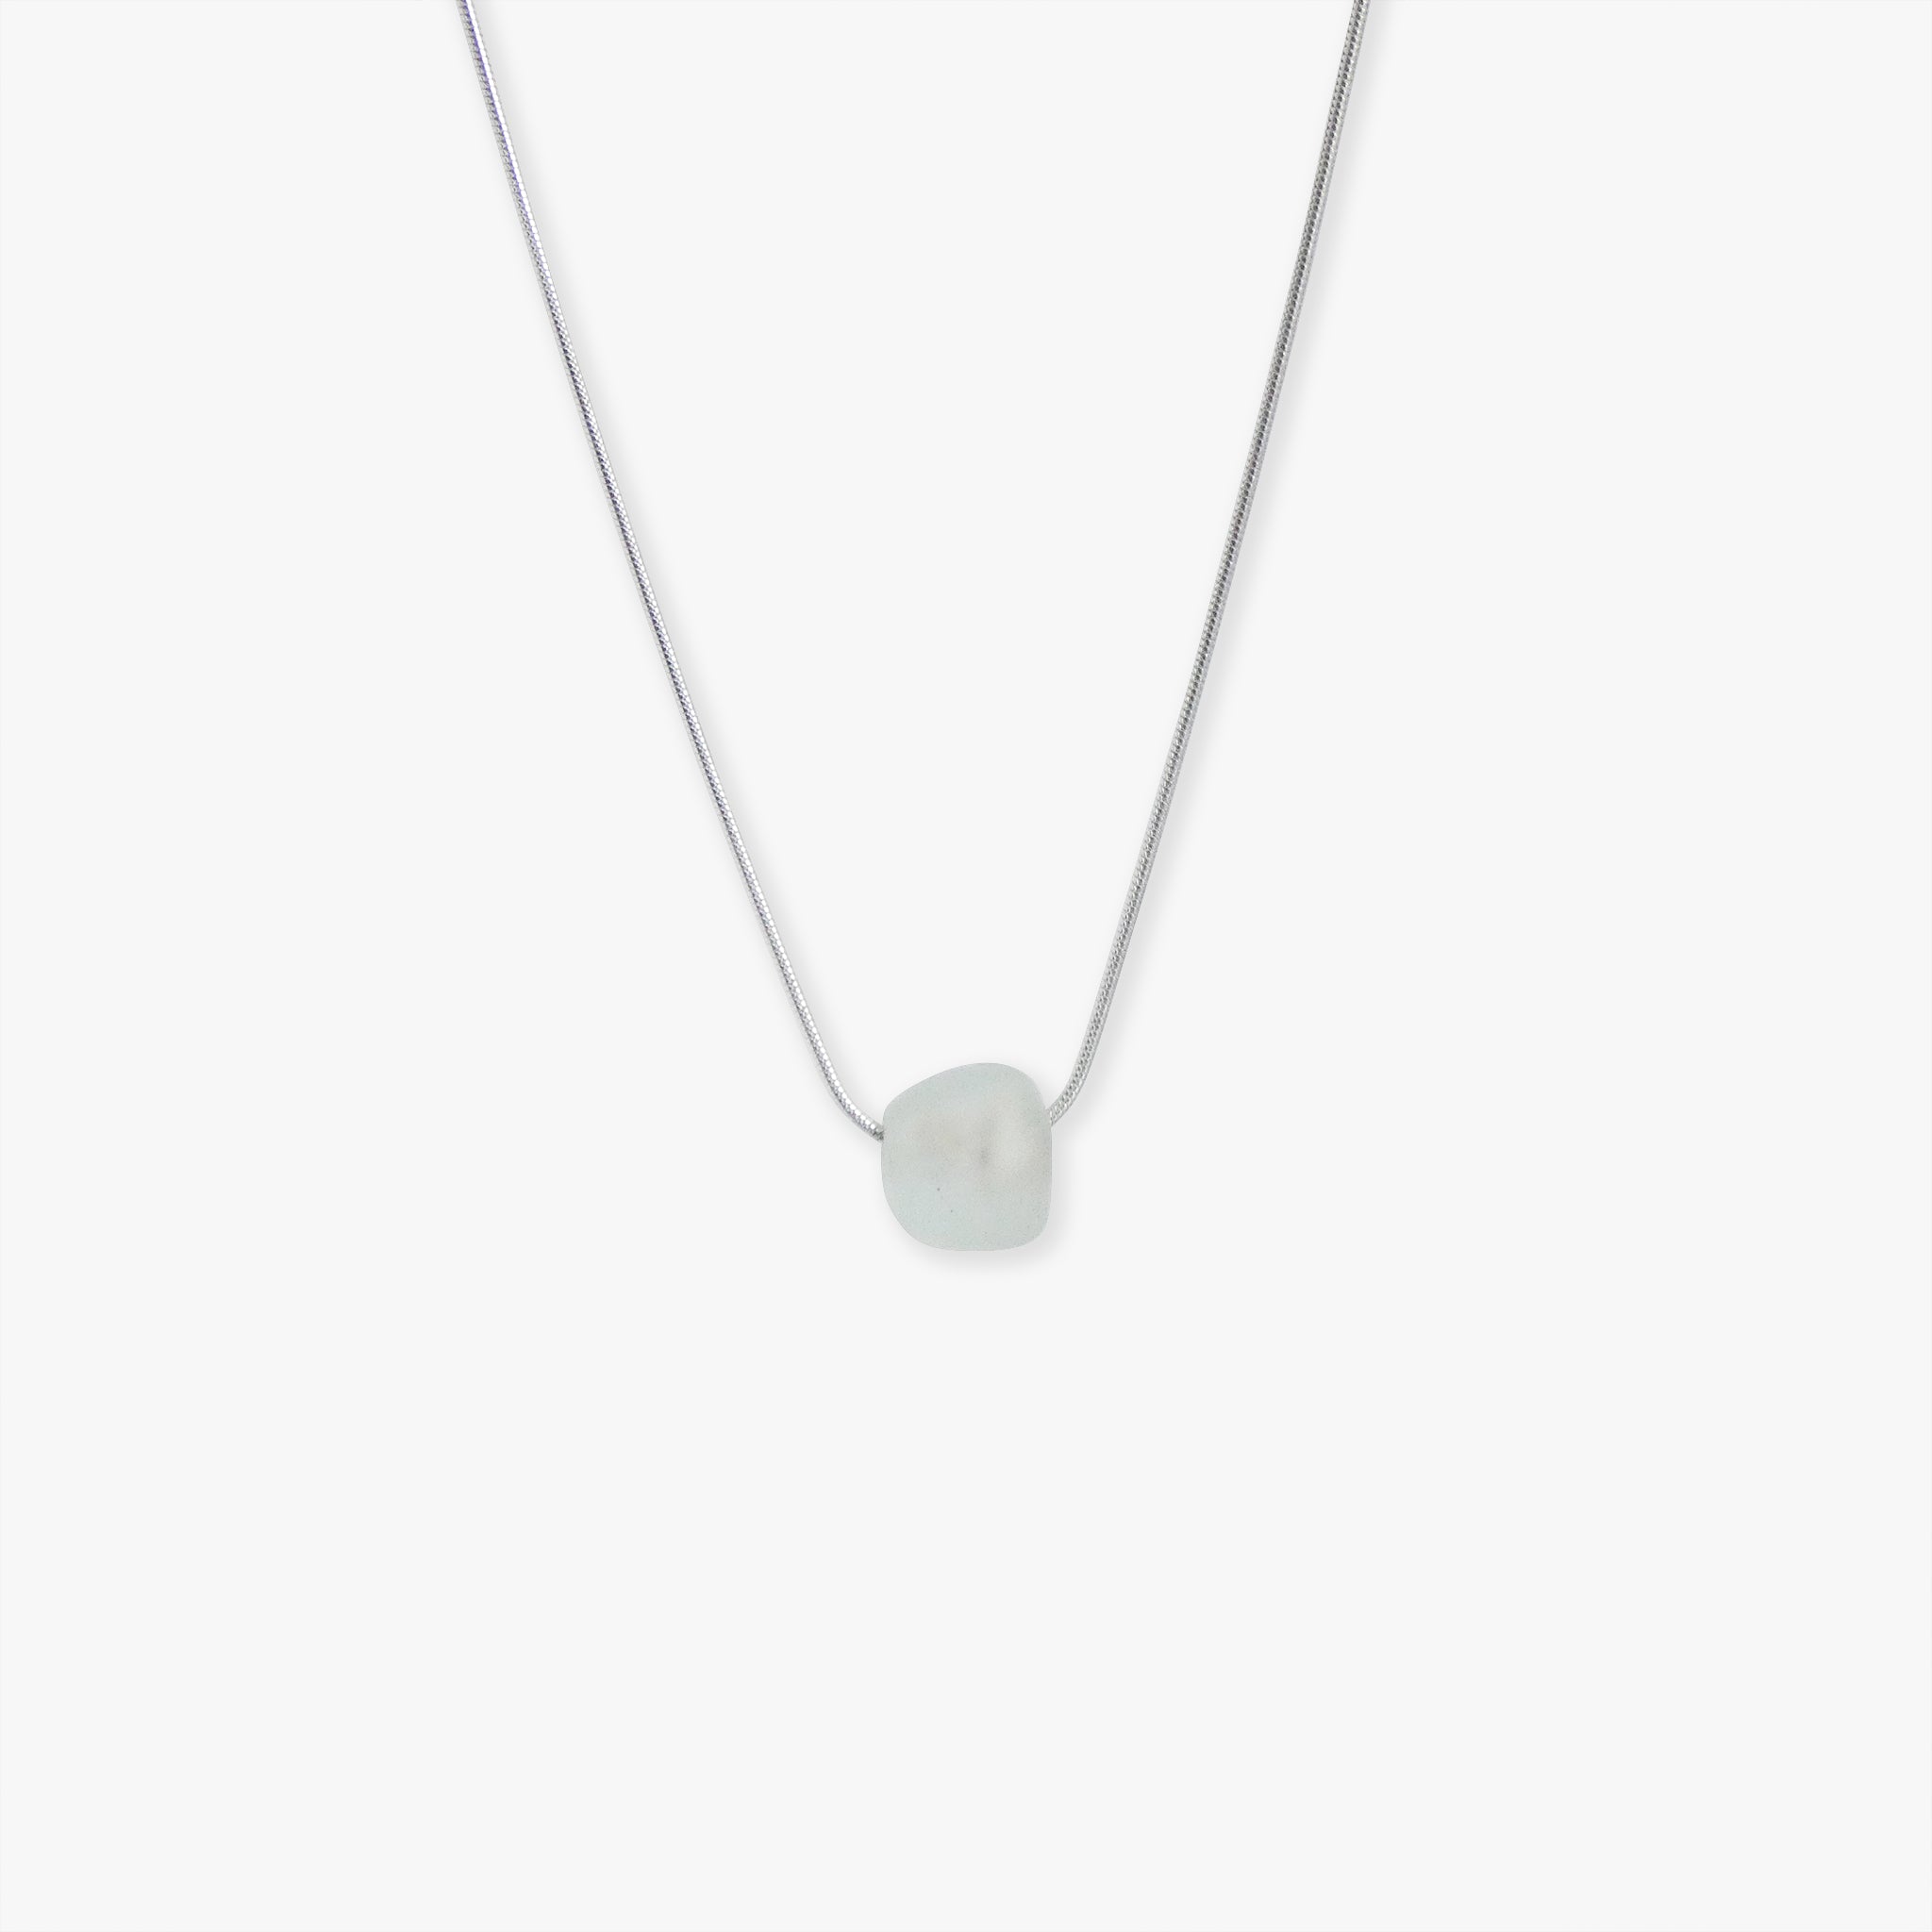 Silver Necklace Circle pendant with Monogram SME SEM Unique adjustable chain